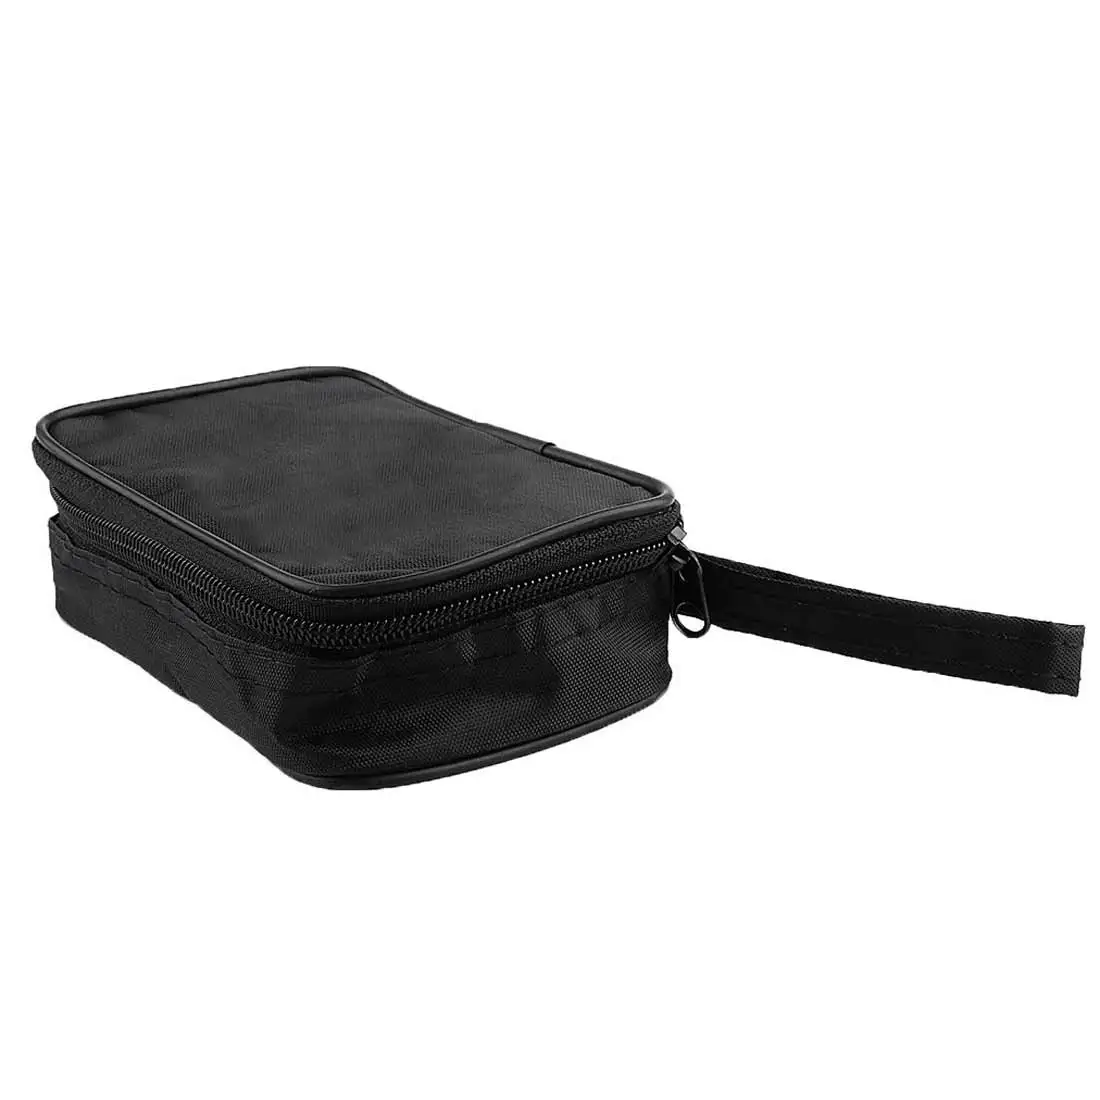 Прочная водонепроницаемая сумка для инструментов мультиметр черная тканевая сумка Прочный водонепроницаемый противоударный мягкий чехол тканевая сумка